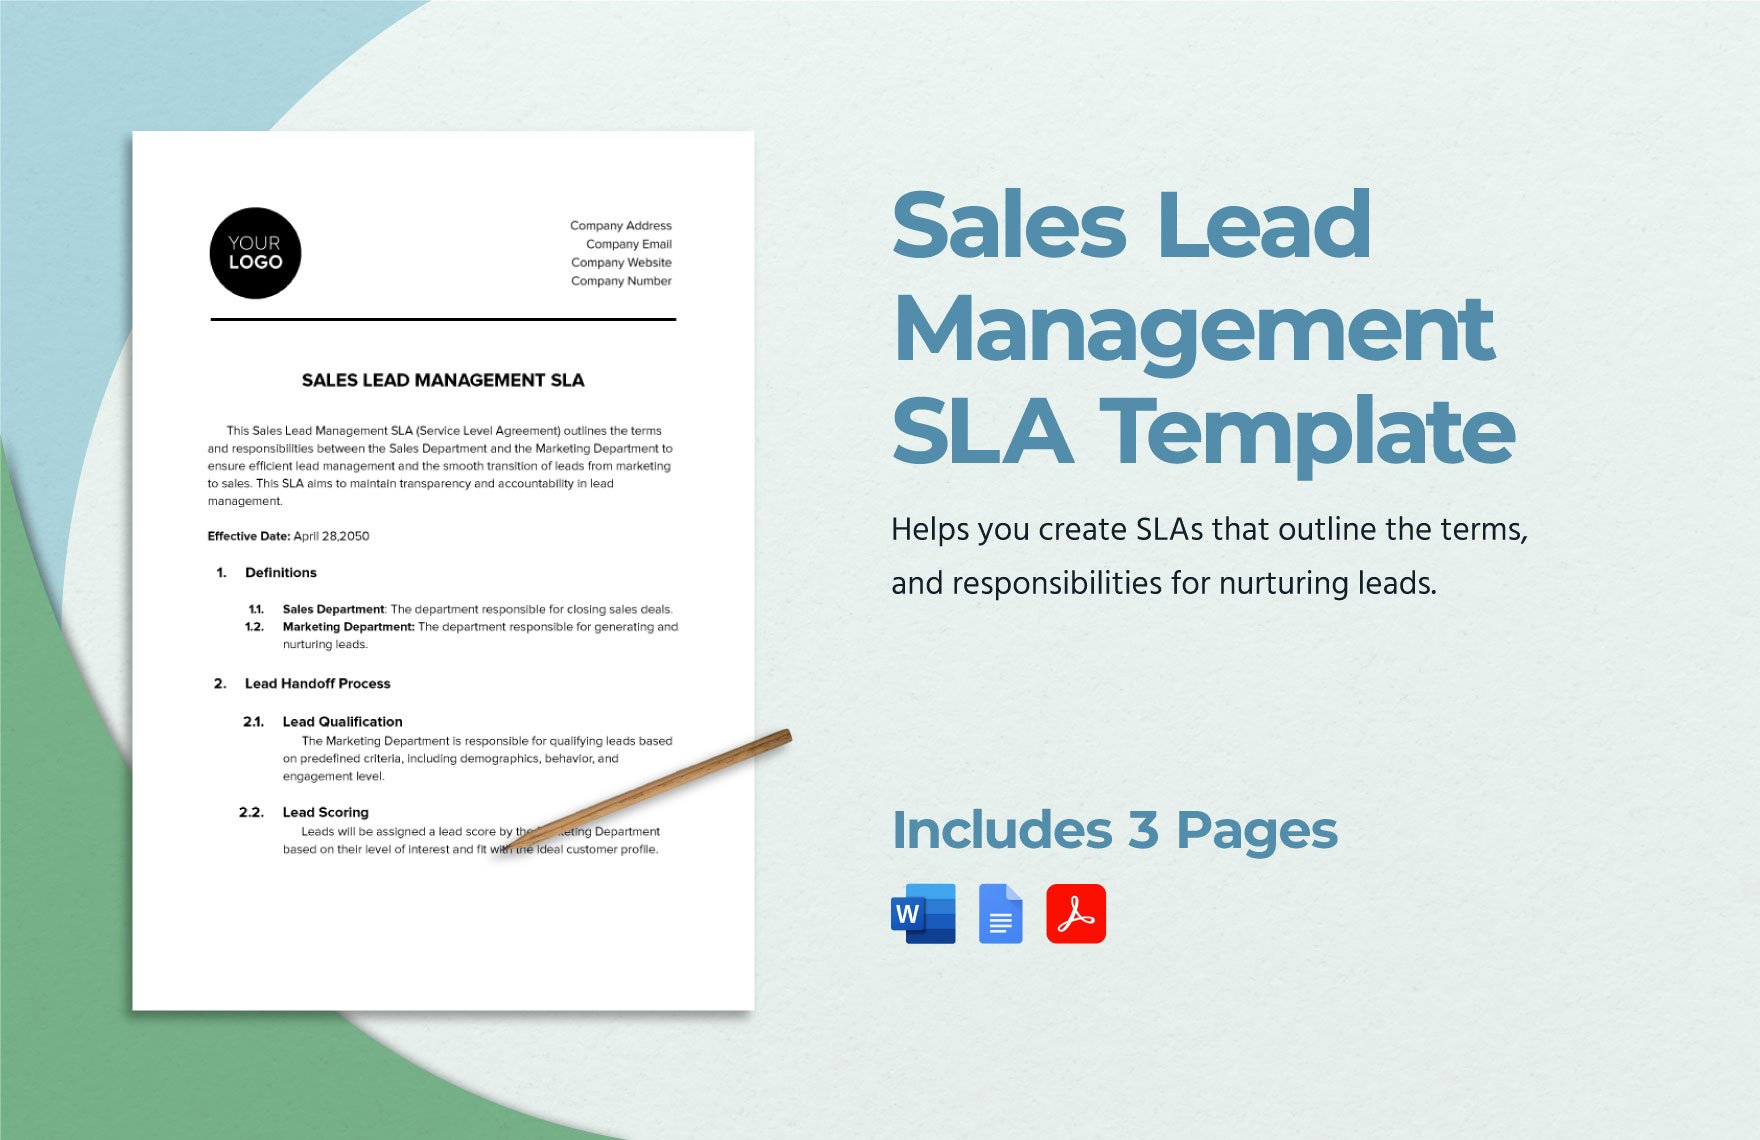 Sales Lead Management SLA Template